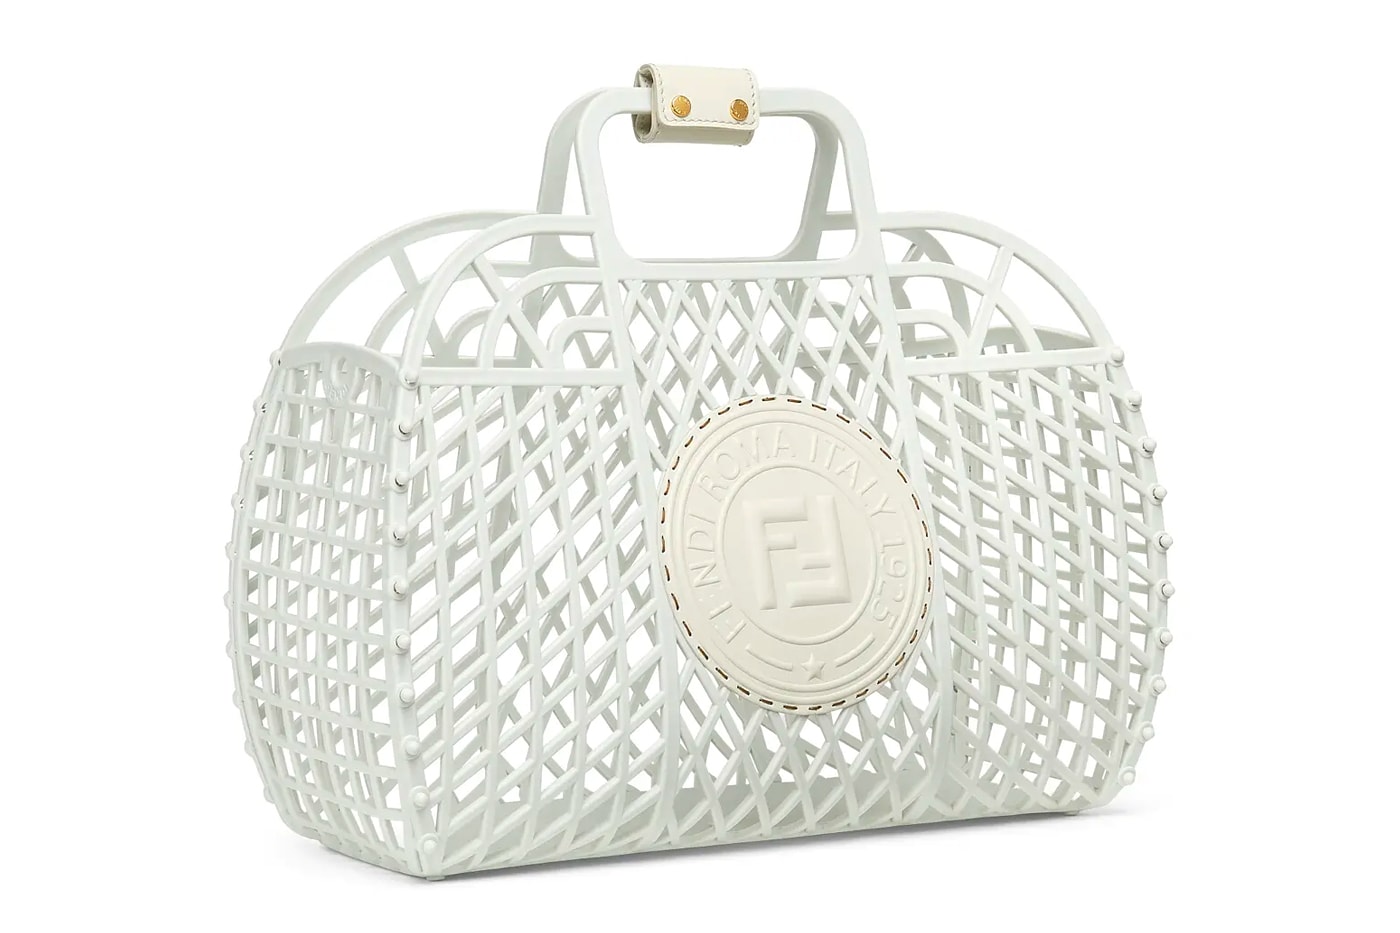 フェンディからラグジュアリーなプラスチック製バスケットバッグが登場 Fendi Recycled Plastic BASKET Handbag Release 1990s nostalgia shopping basket 